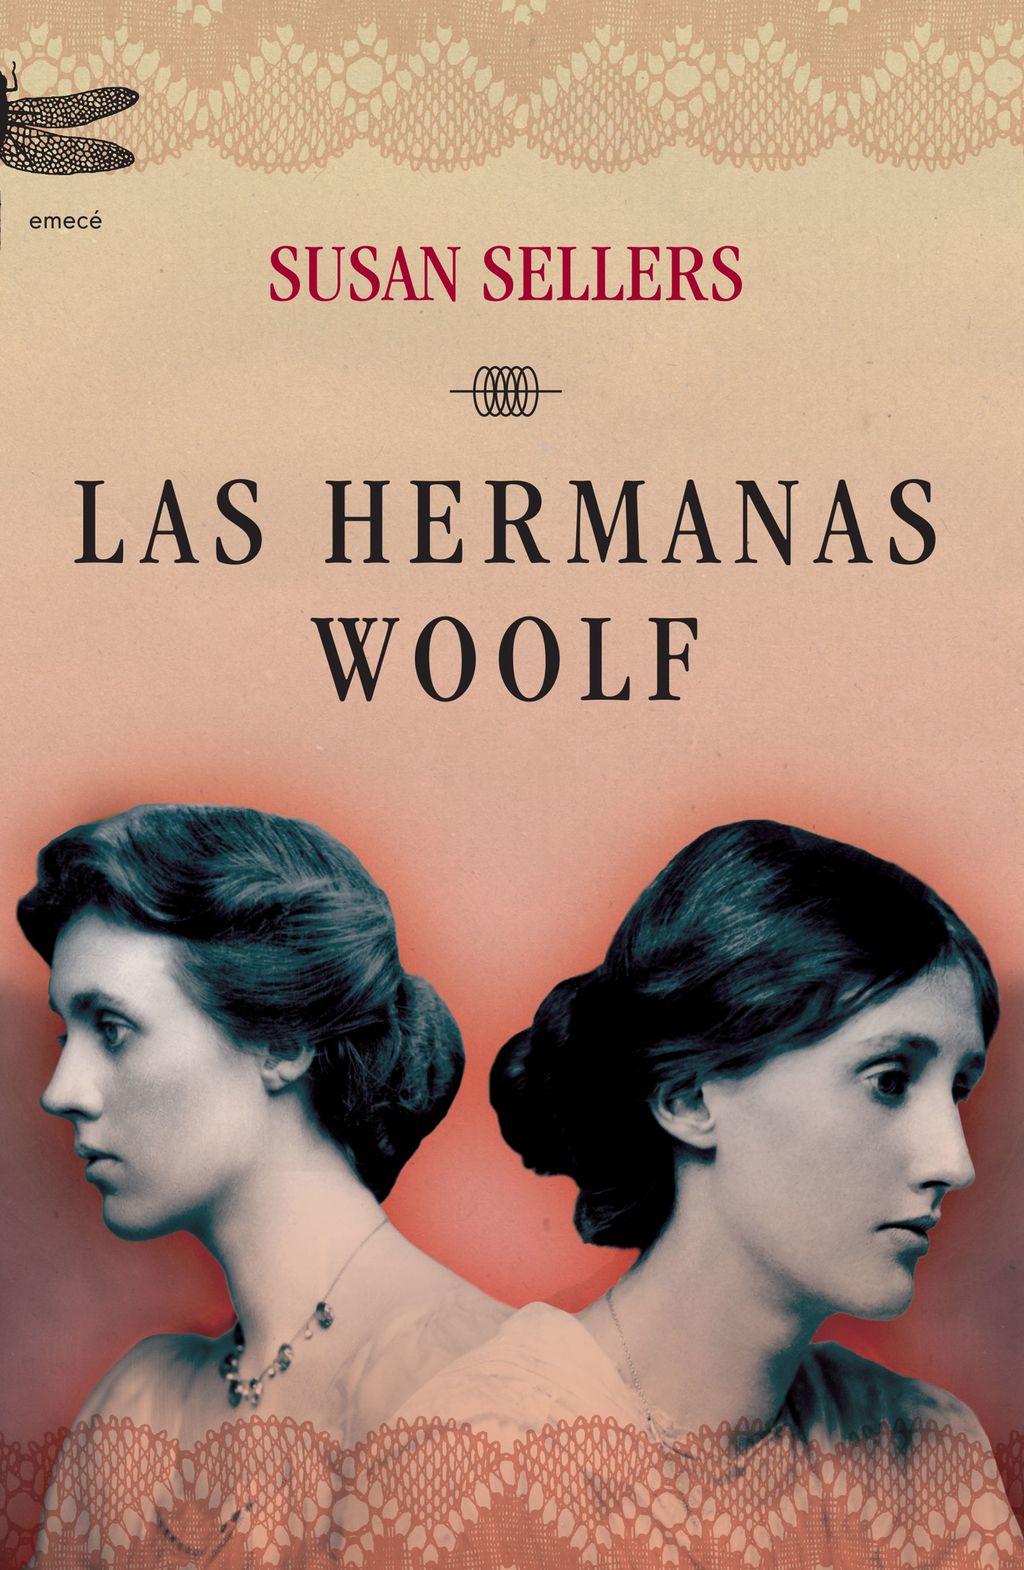  Susan Sellers. Nos presenta en esta novela un retrato íntimo y psicológico de las hermanas Virginia Woolf y Vanessa Bell.